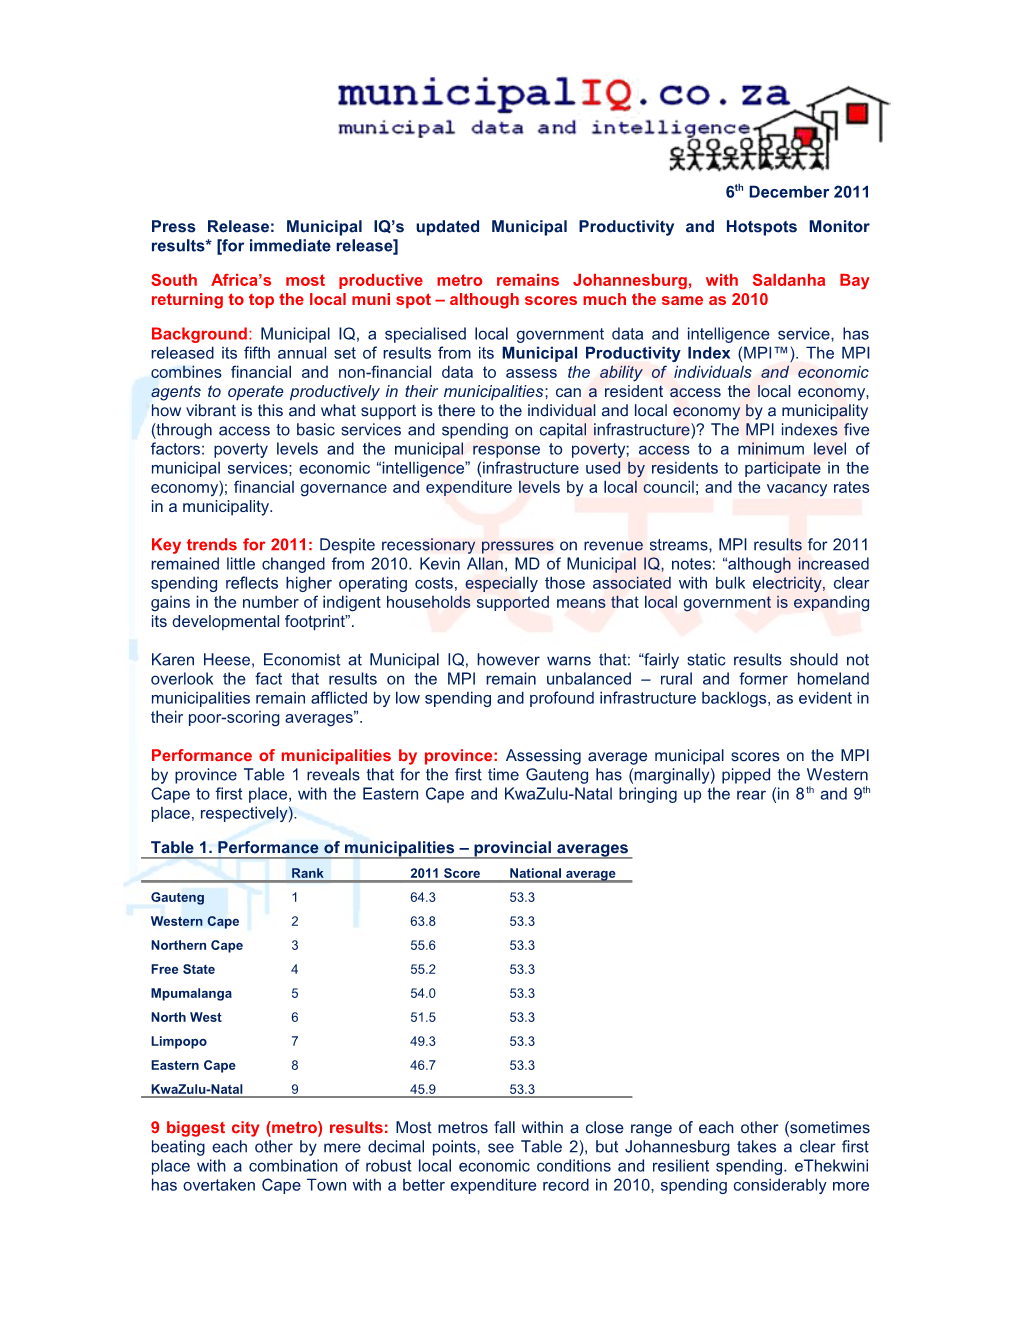 Press Release:Municipal IQ S Updated Municipal Productivity and Hotspots Monitor Results*